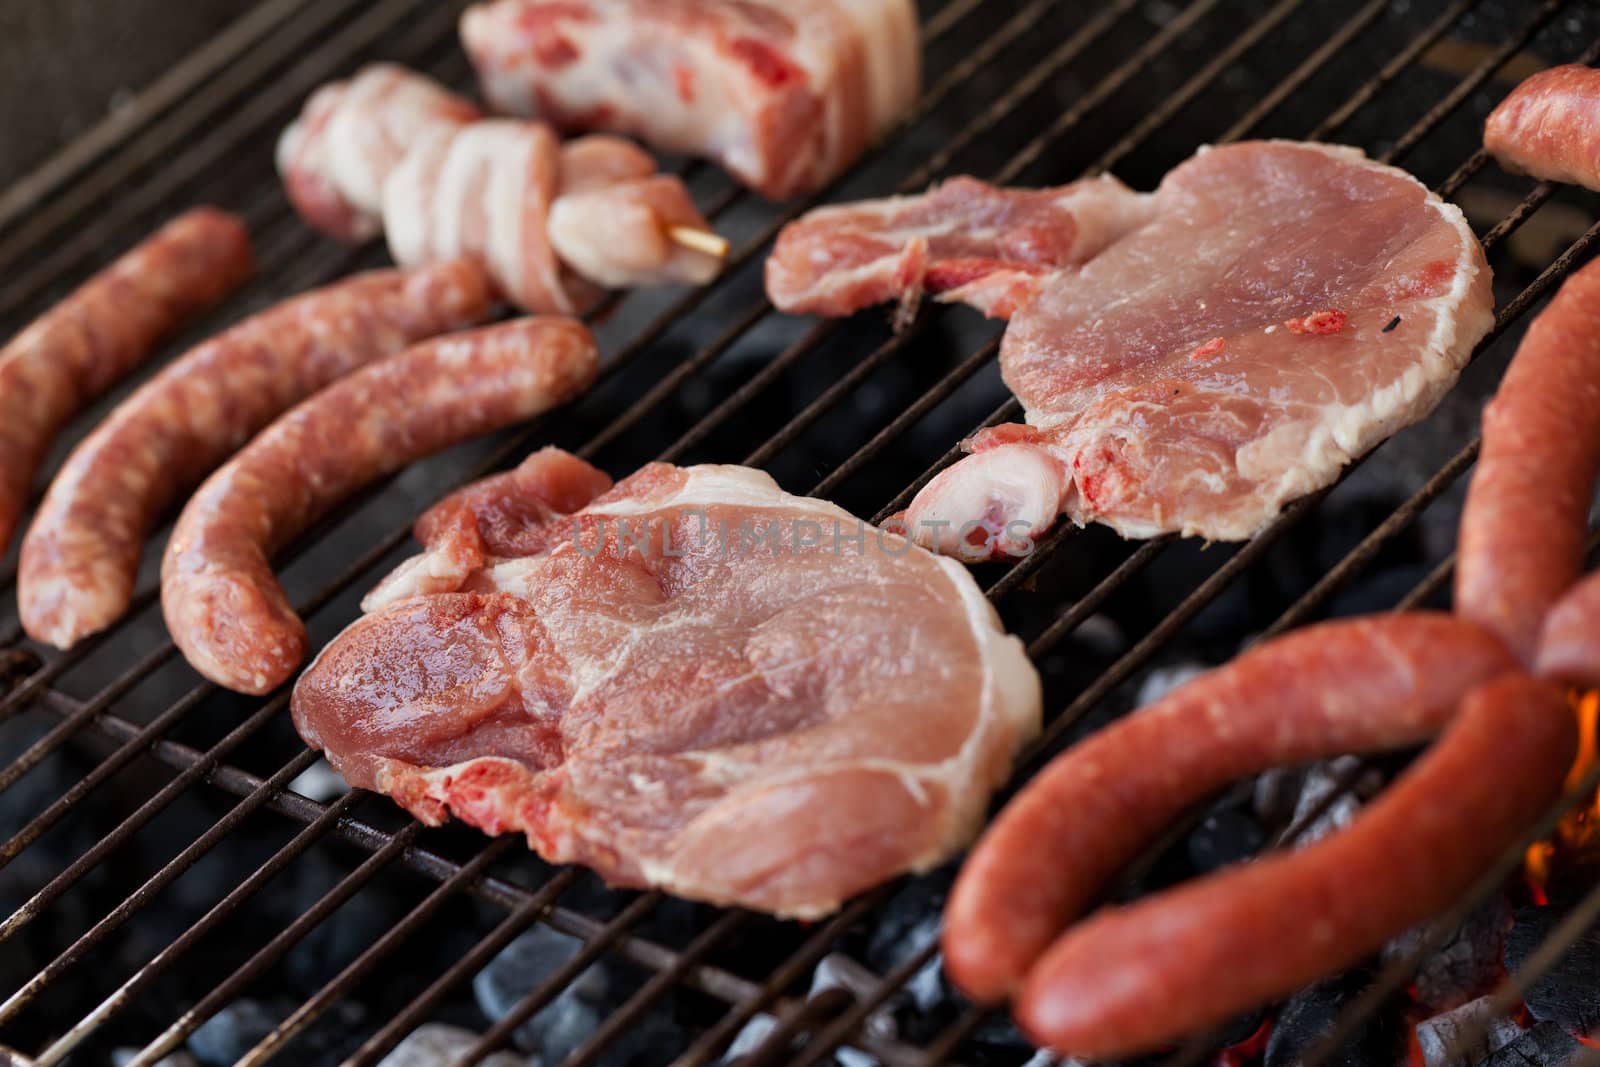 Meat on the grill by dario_lo_presti